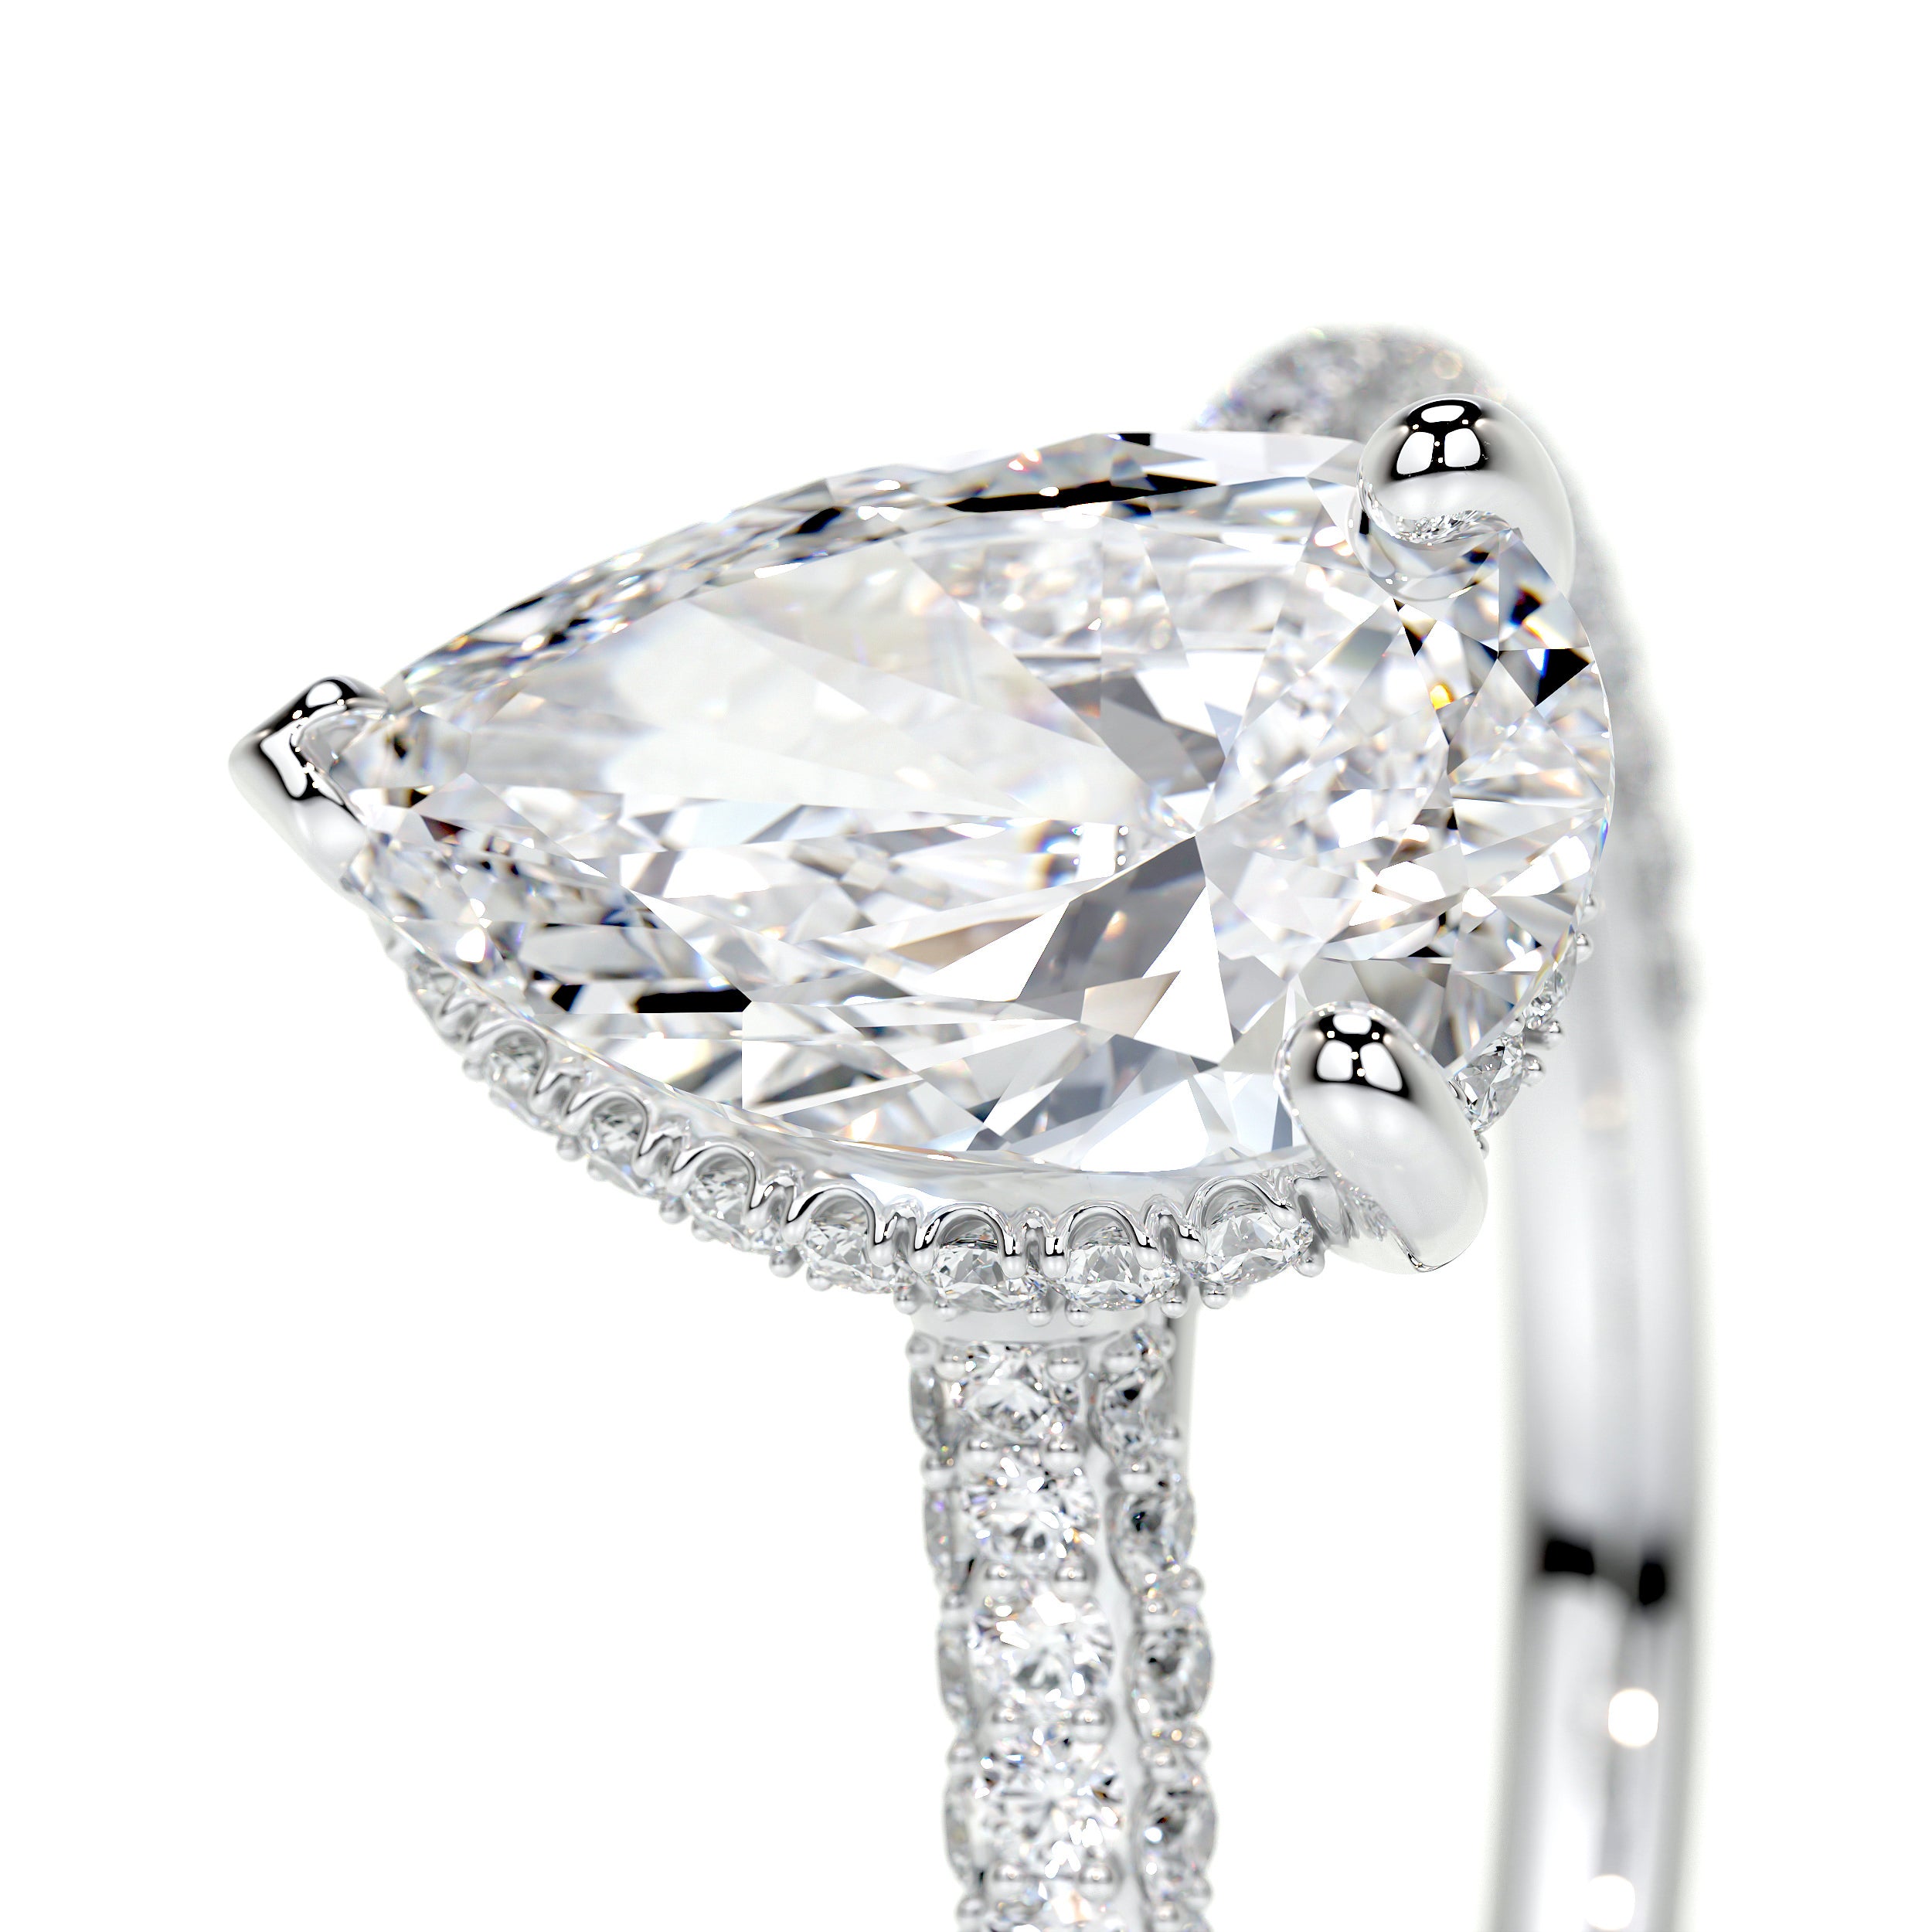 Nakia Lab Grown Diamond Ring -14K White Gold